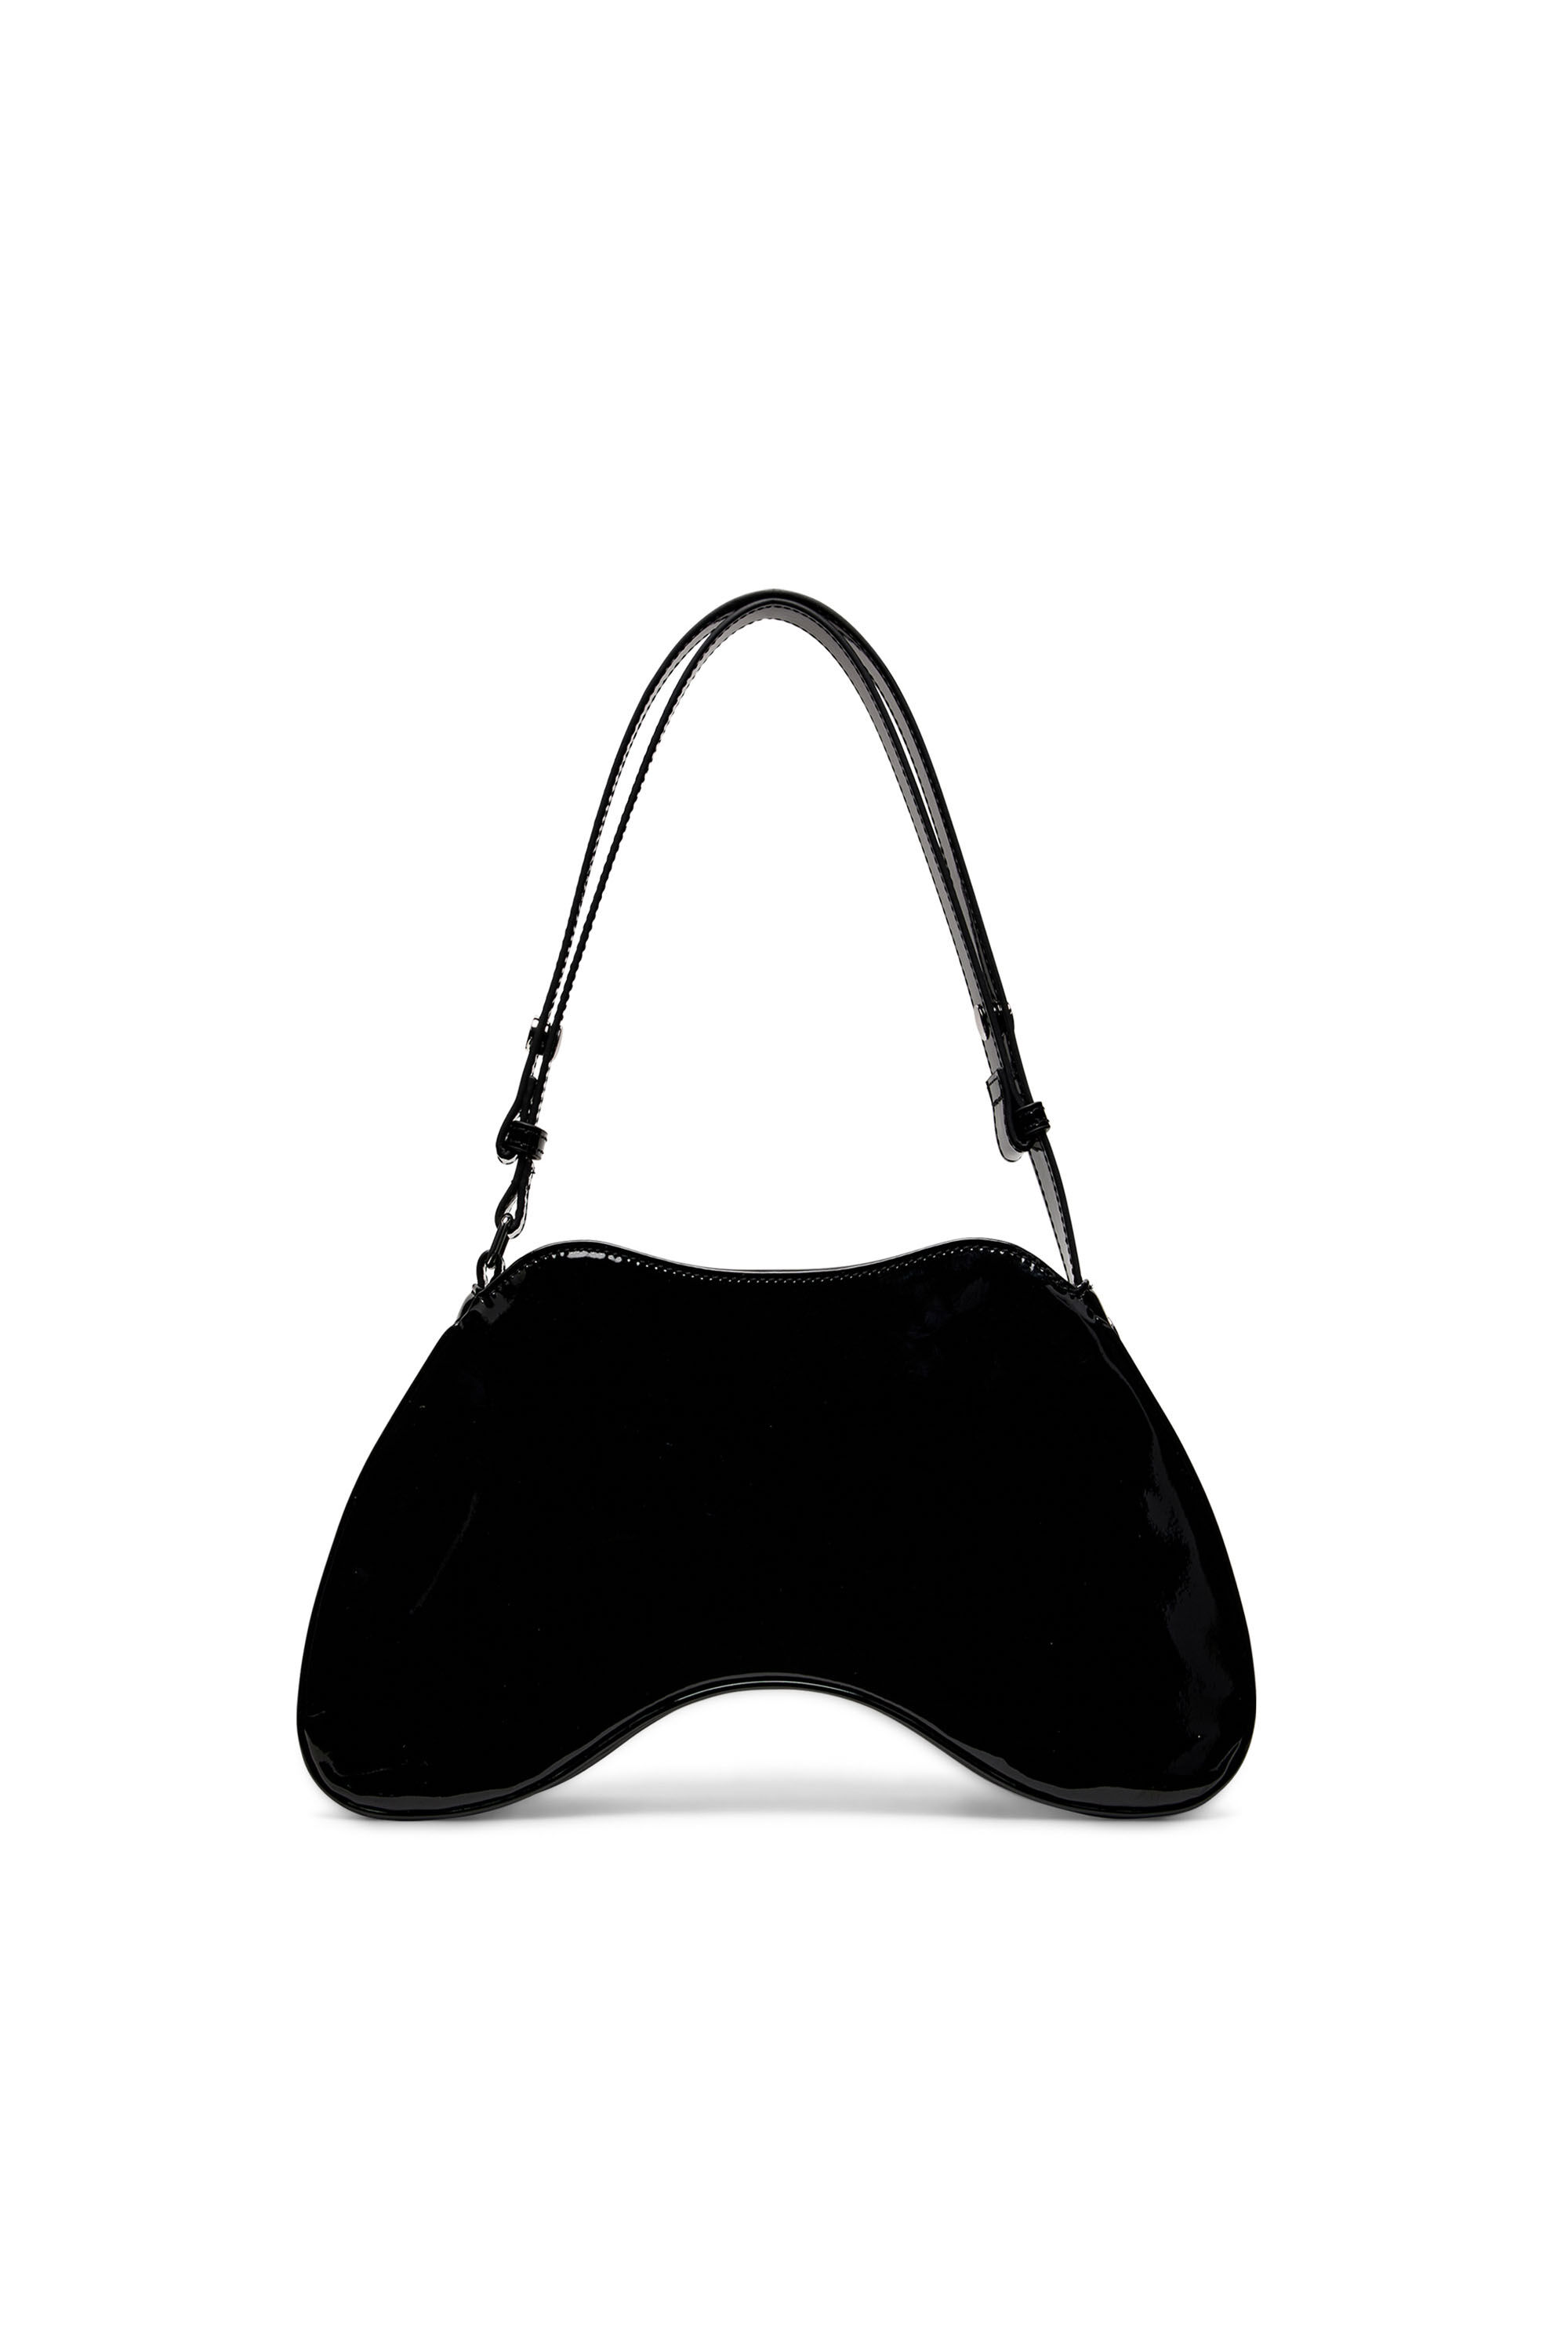 Diesel - PLAY SHOULDER, Woman Play-Glossy shoulder bag in Black - Image 3